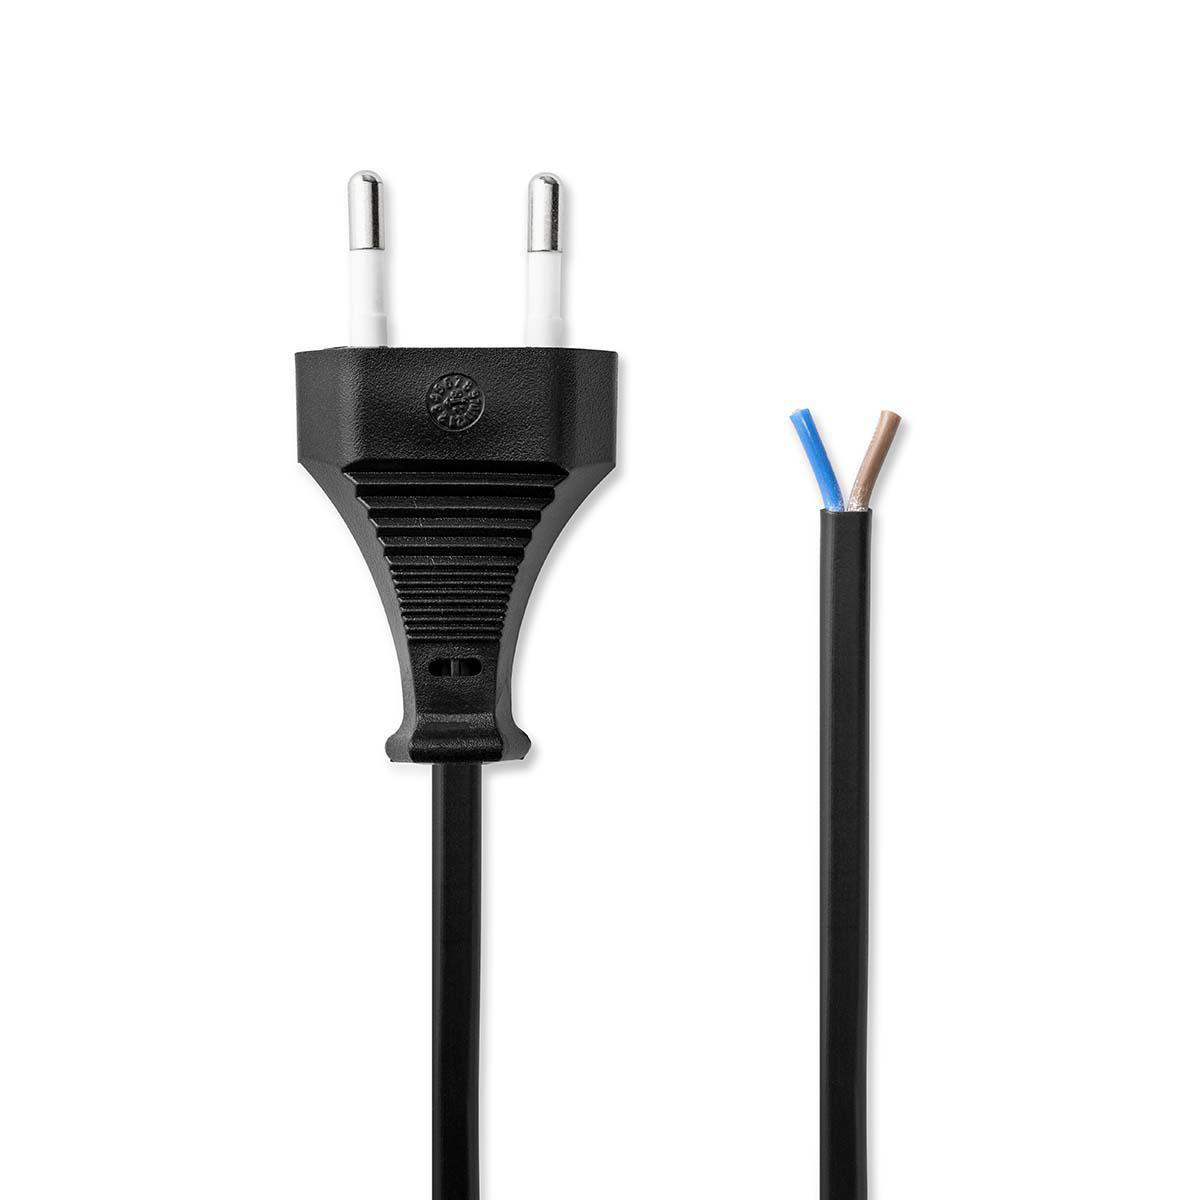 Napájecí flexo Euro kabel 2 x 0.75 mm, 3 m, černá (PCGP11700BK30)